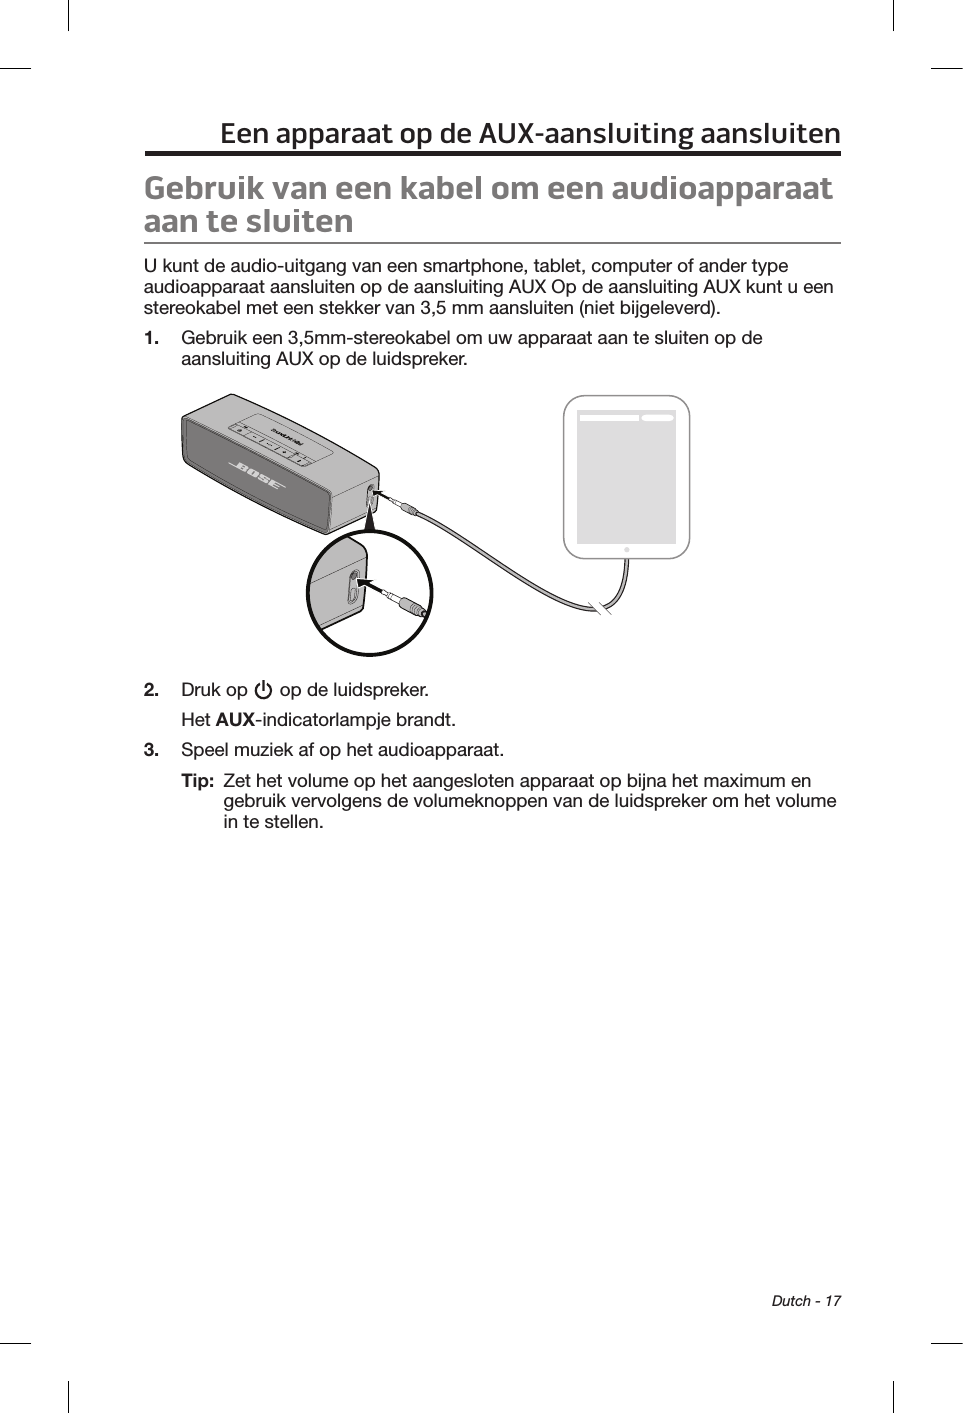  Dutch - 17Een apparaat op de AUX-aansluiting aansluitenGebruik van een kabel om een audioapparaat aan te sluitenU kunt de audio-uitgang van een smartphone, tablet, computer of ander type audioapparaat aansluiten op de aansluiting AUX Op de aansluiting AUX kunt u een stereokabel met een stekker van 3,5 mm aansluiten (niet bijgeleverd).1.  Gebruik een 3,5mm-stereokabel om uw apparaat aan te sluiten op de aansluiting AUX op de luidspreker.2.  Druk op   op de luidspreker.Het AUX-indicatorlampje brandt.3.  Speel muziek af op het audioapparaat.Tip:   Zet het volume op het aangesloten apparaat op bijna het maximum en gebruik vervolgens de volumeknoppen van de luidspreker om het volume in te stellen.